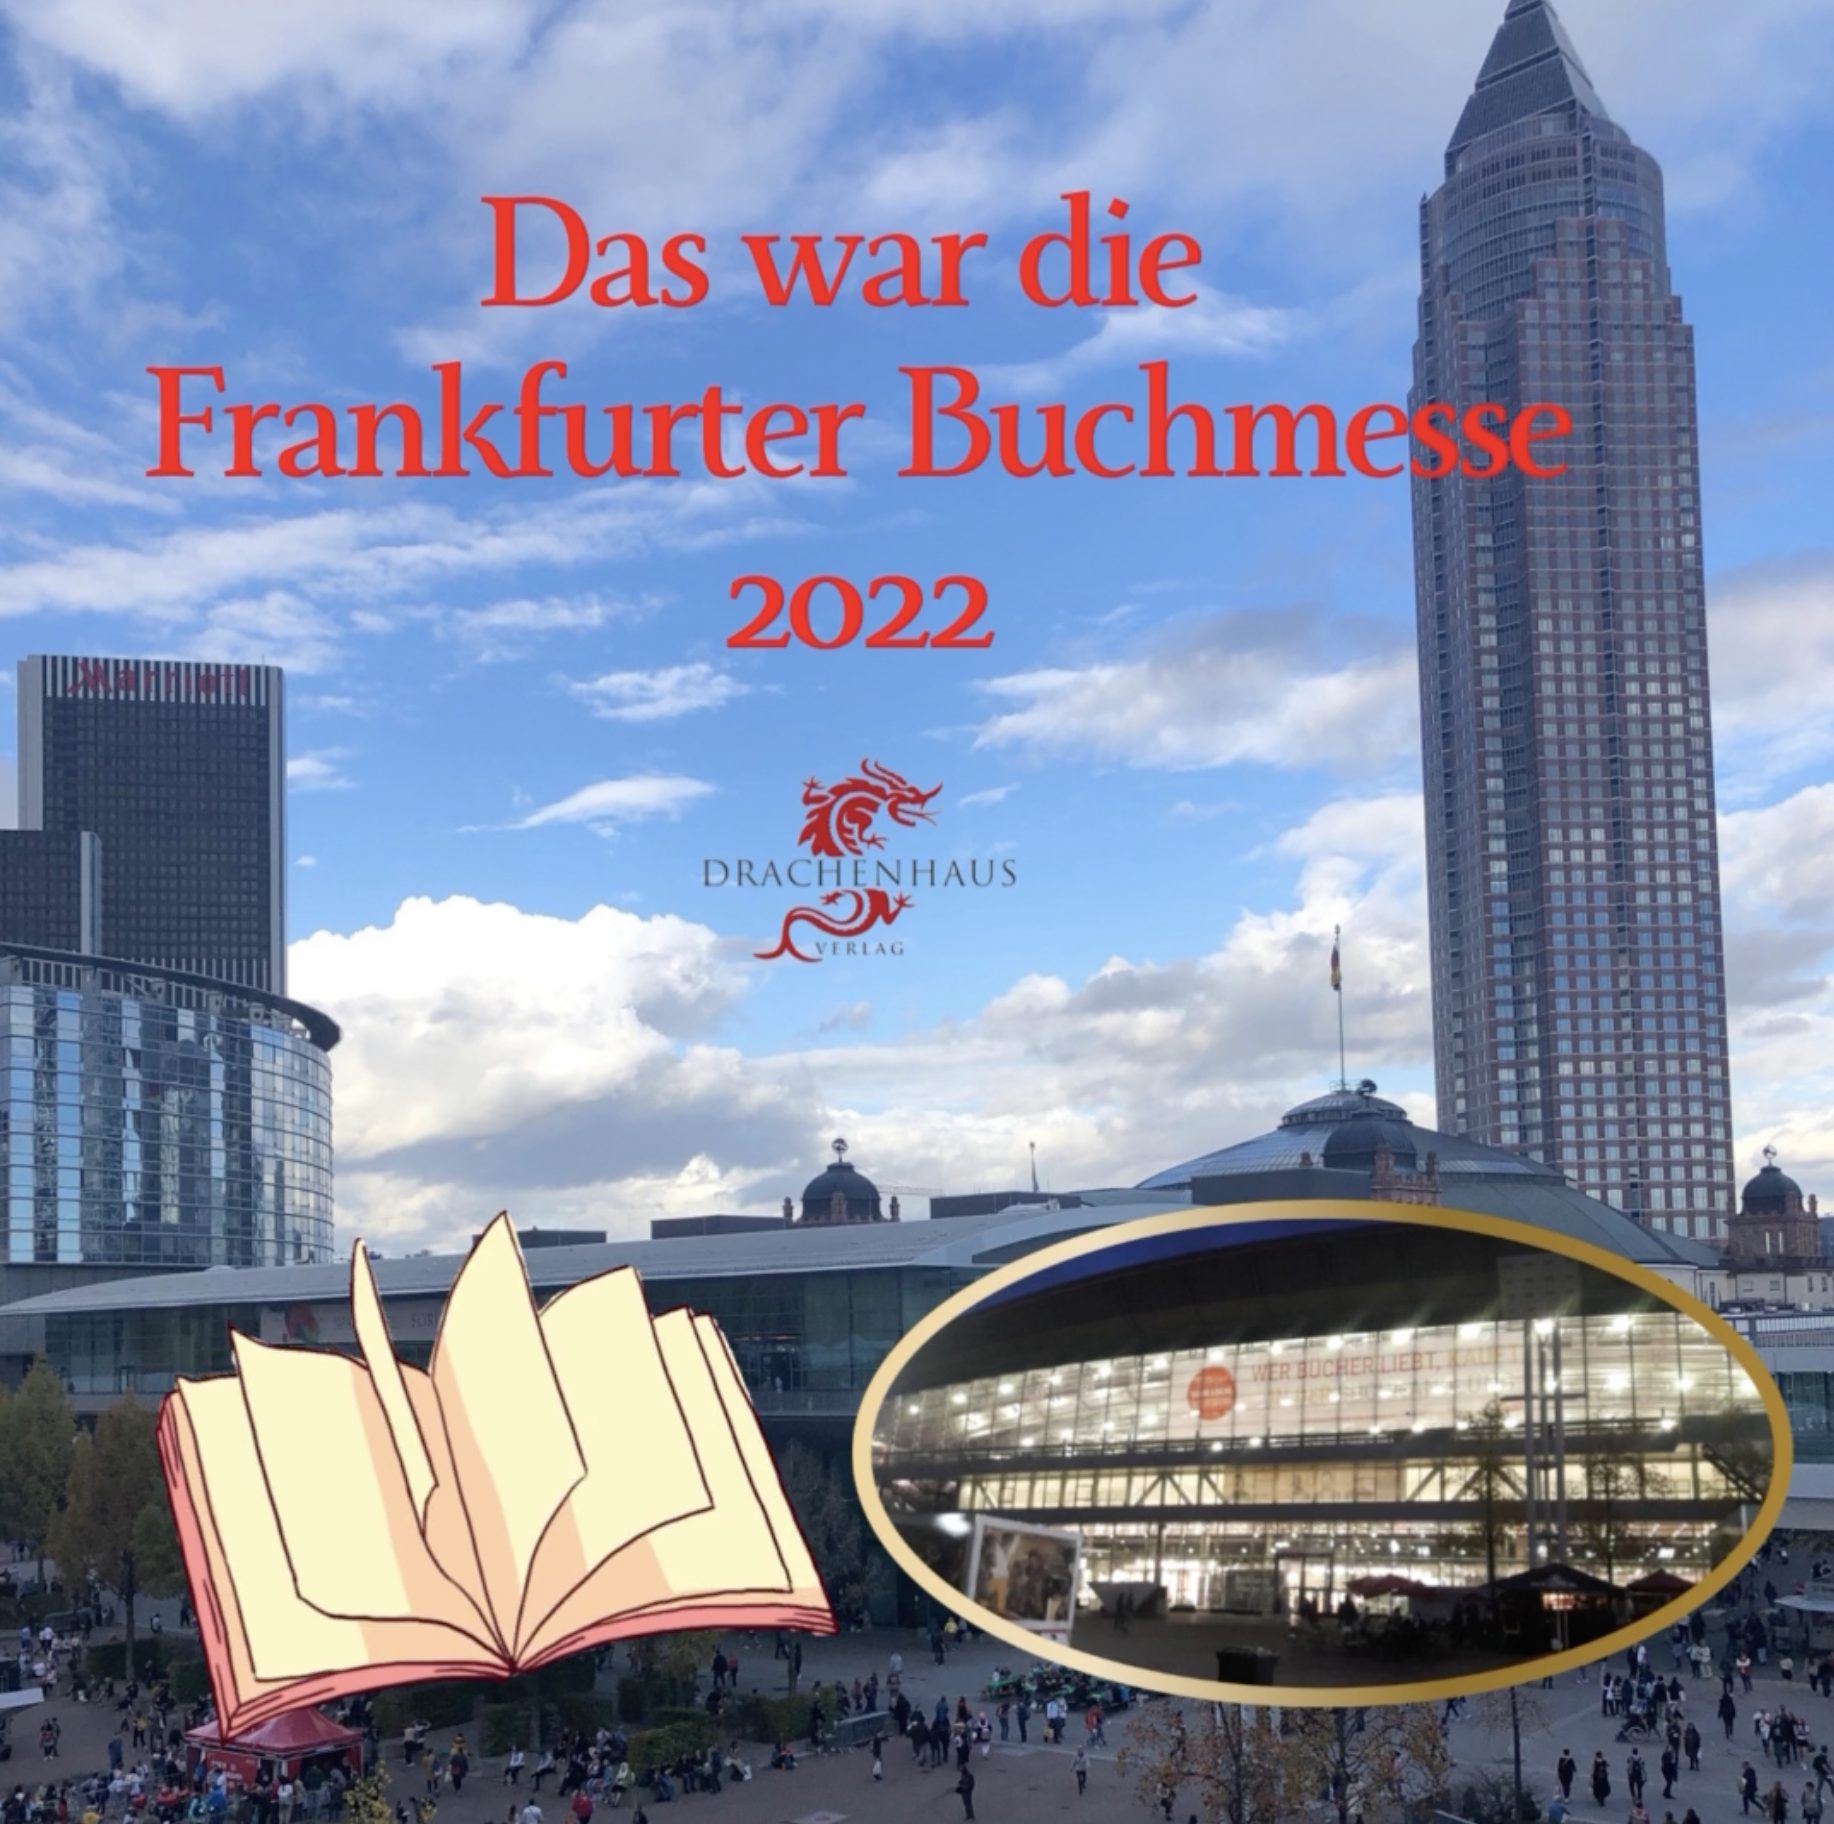 Drachenhaus-auf-der-Frankfurter-Buchmesse-2022.